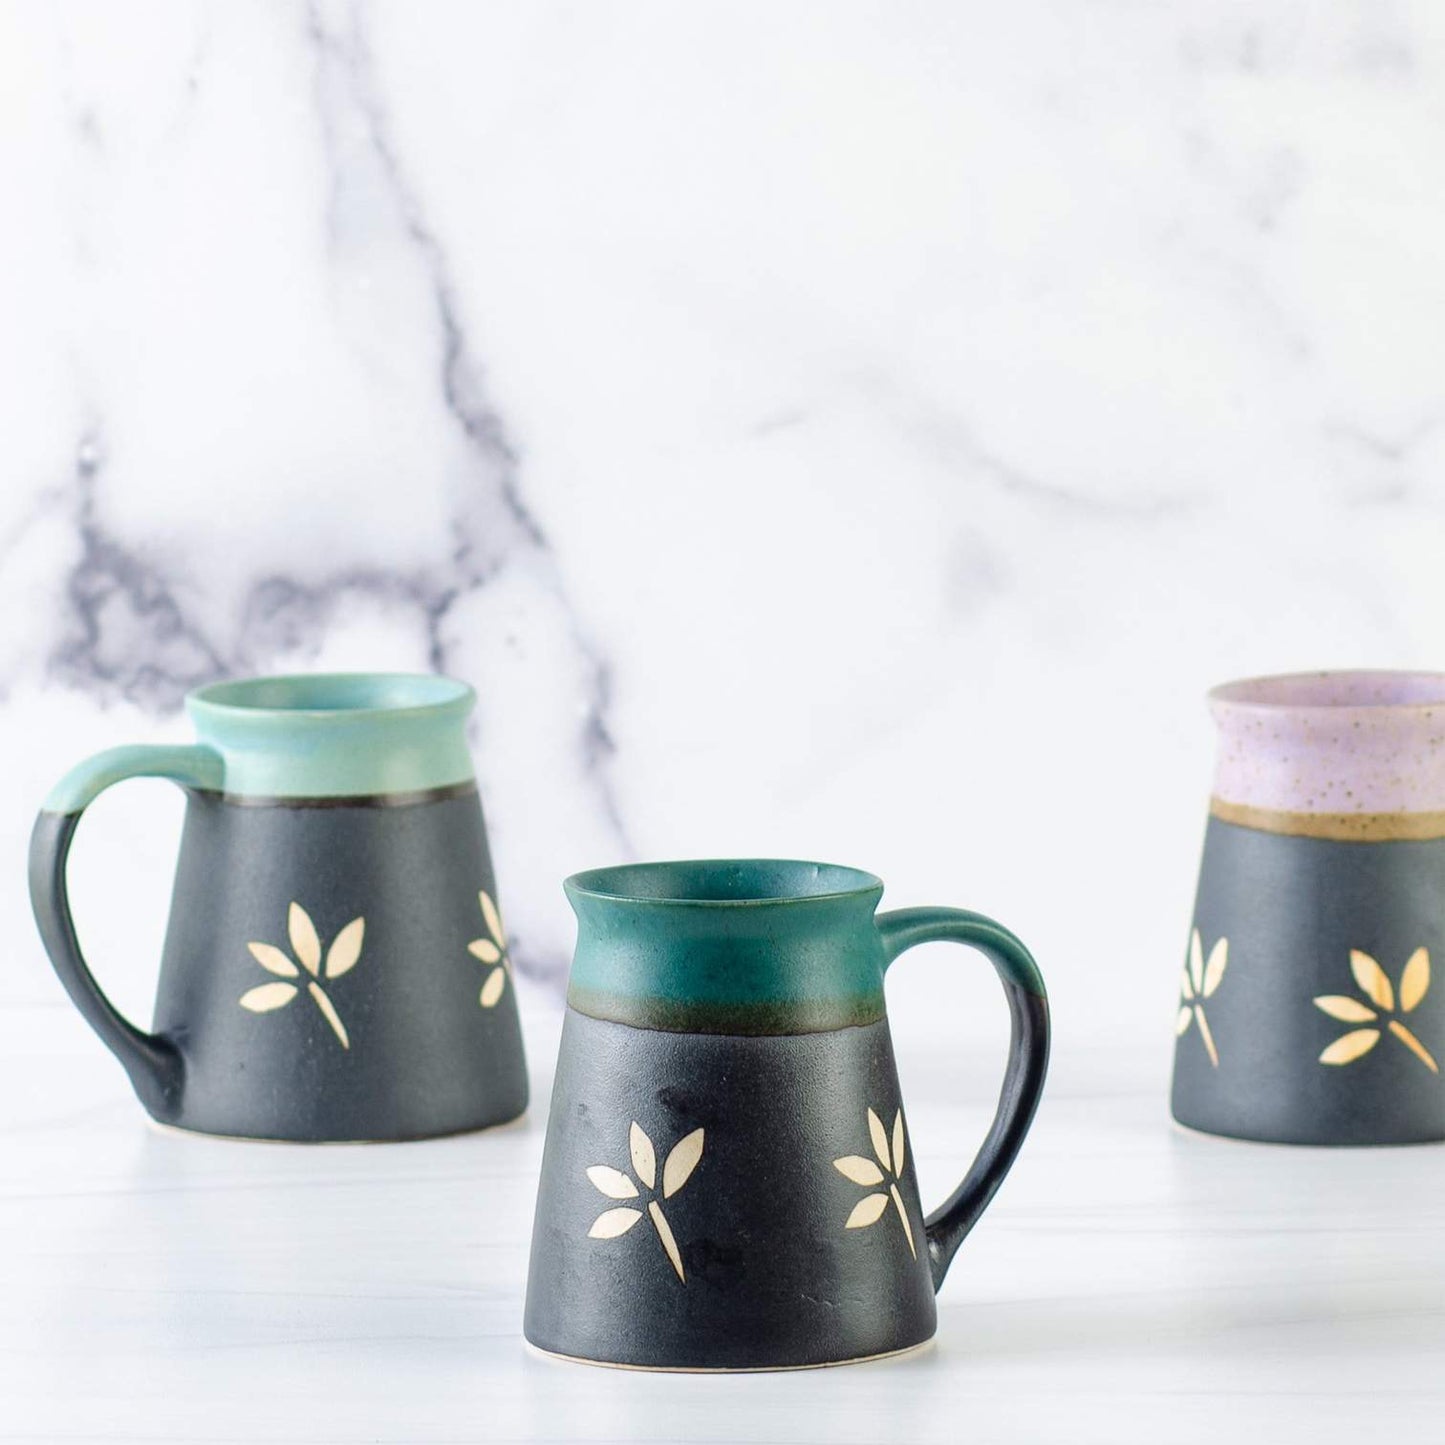 Ruhi Teal Ceramic Mug - Handmade, Fair Trade